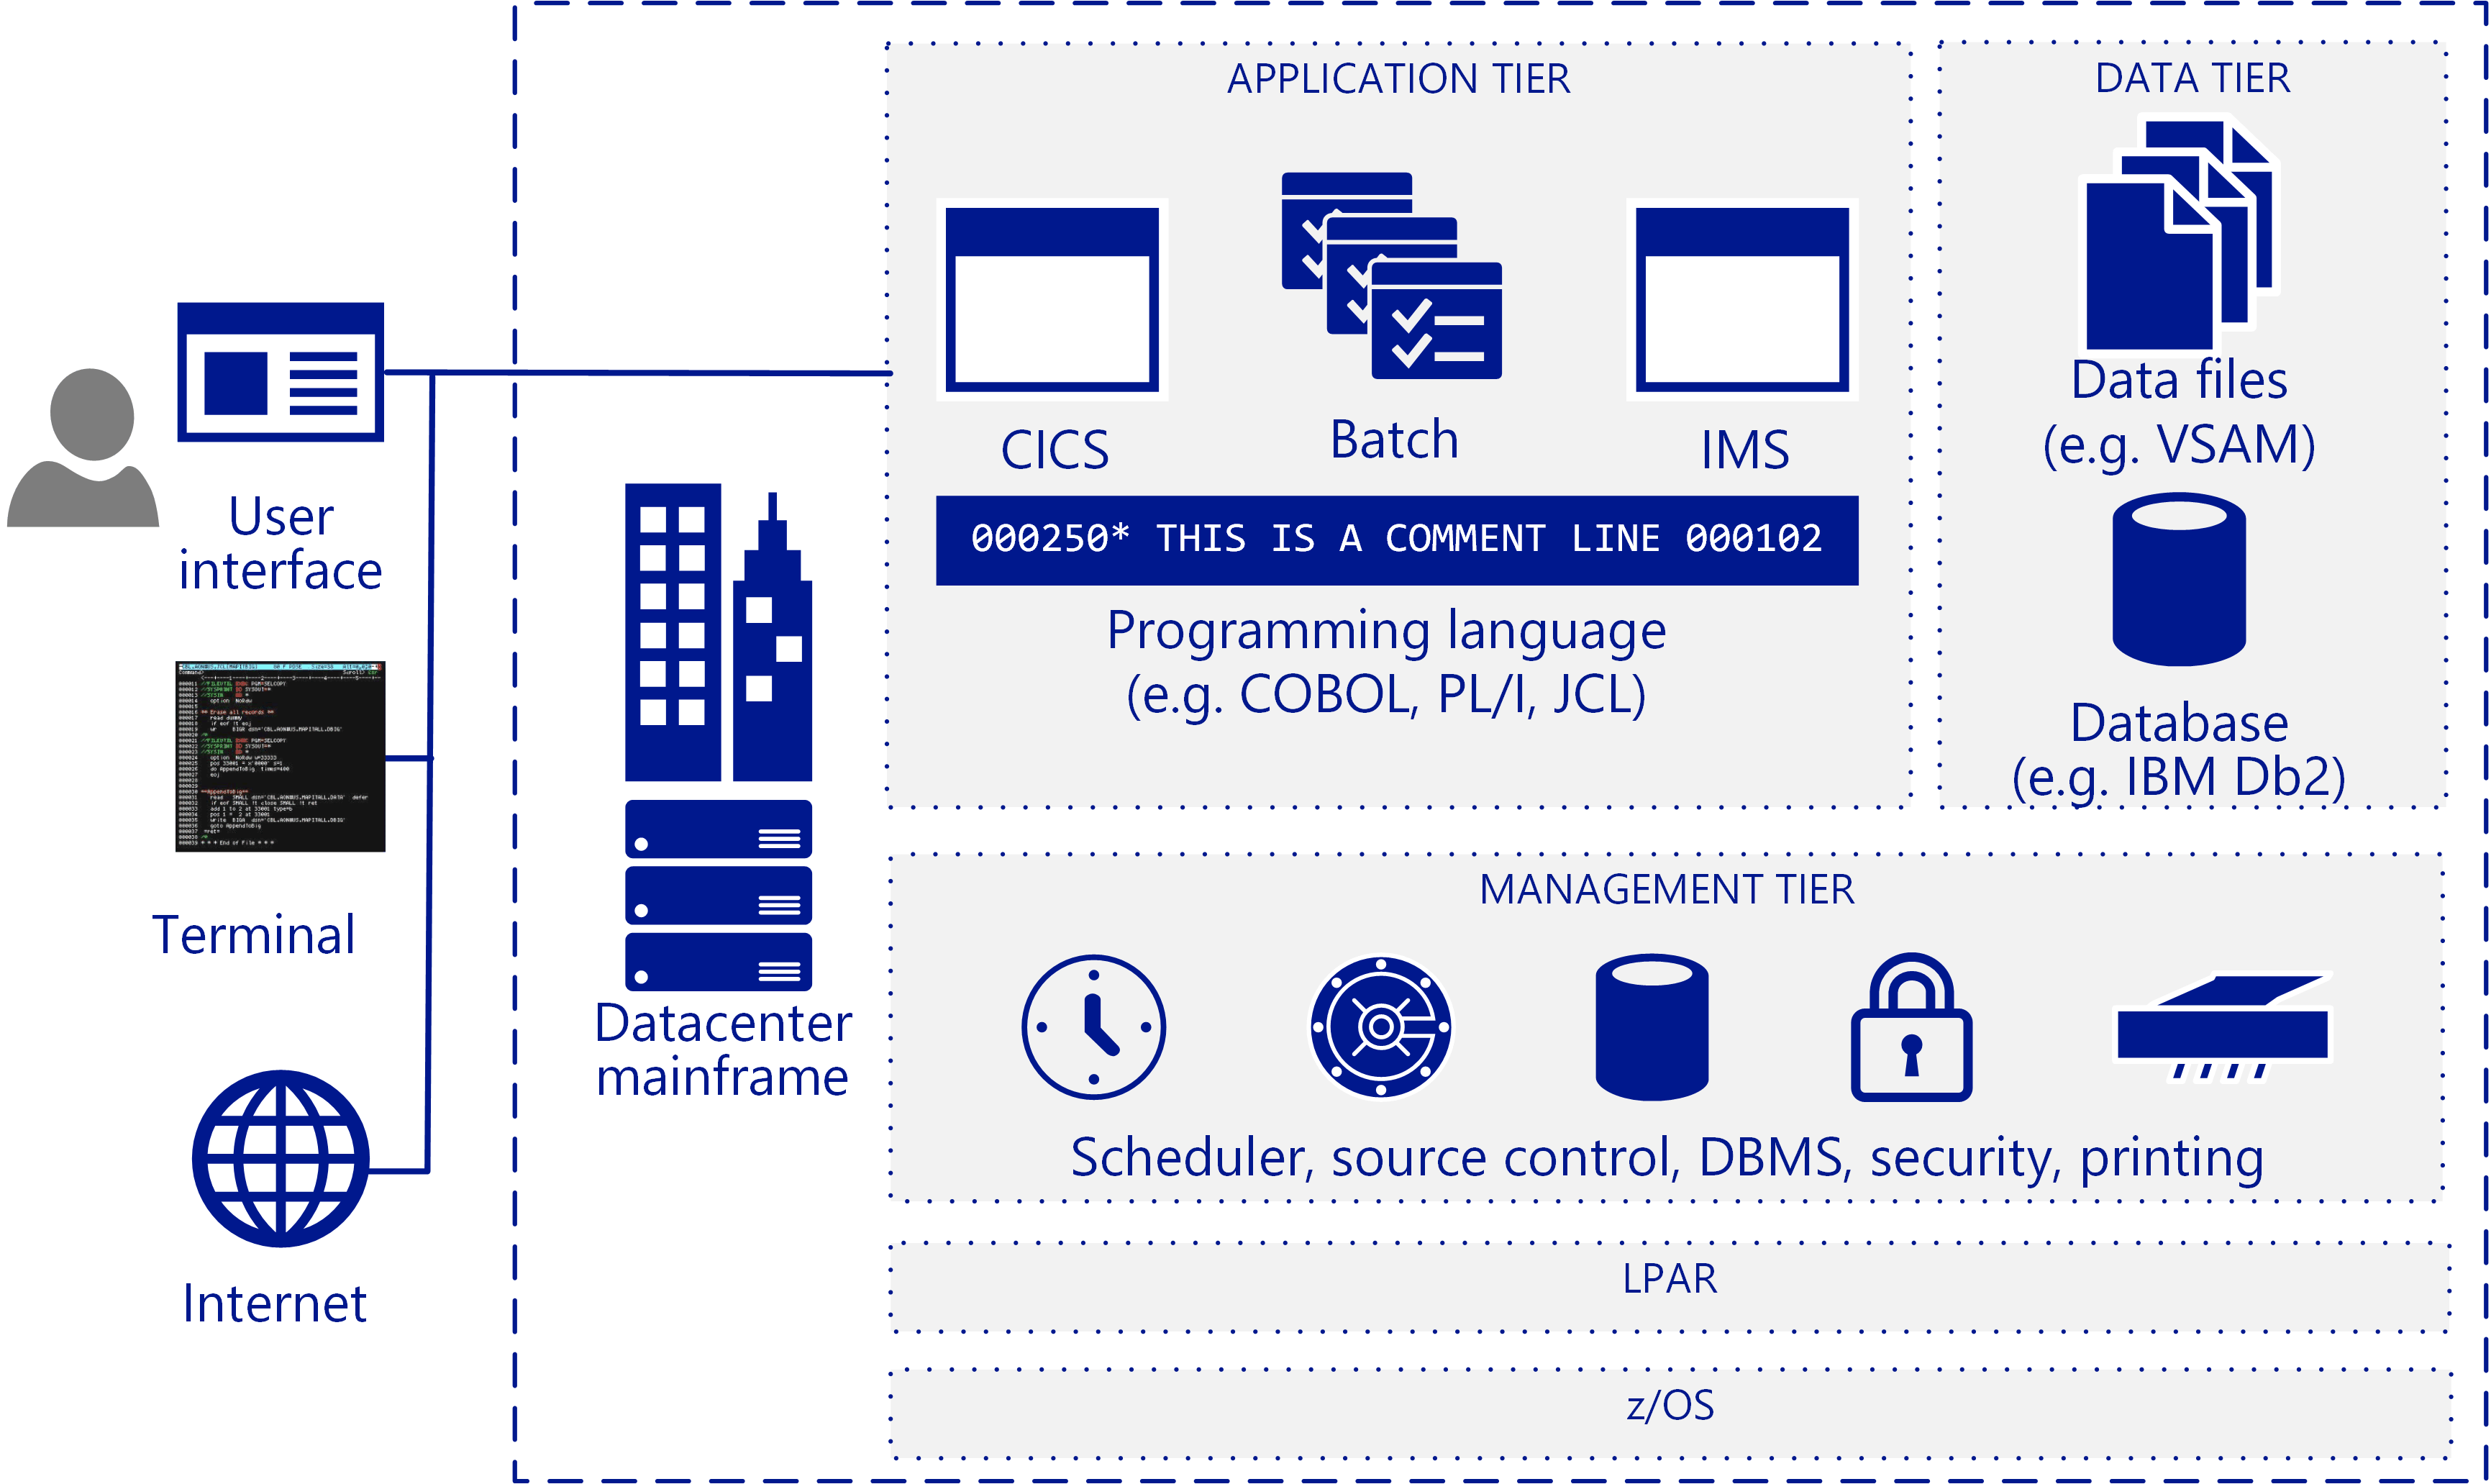 Componentes en una arquitectura de sistema central IBM típica